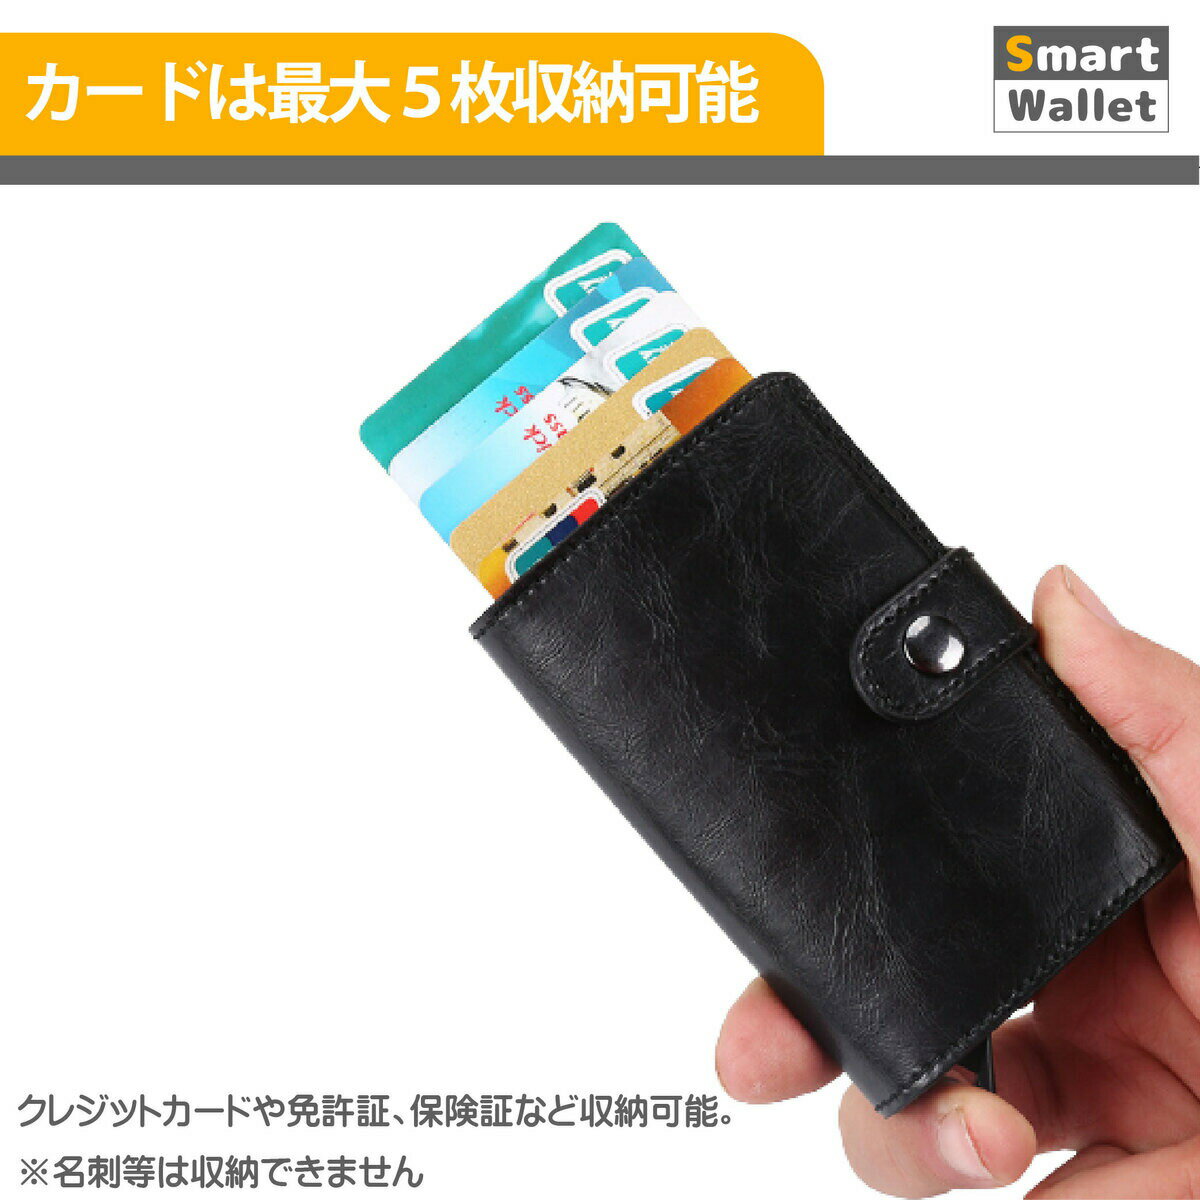 財布 スライド スライド式財布 レザー調 スキミング防止 カードケース サイドボタン付 キャッシュレス クレジットカードケース 磁気防止 スライド式 スマート ポップアップ 飛び出す ボタン【送料無料】 3